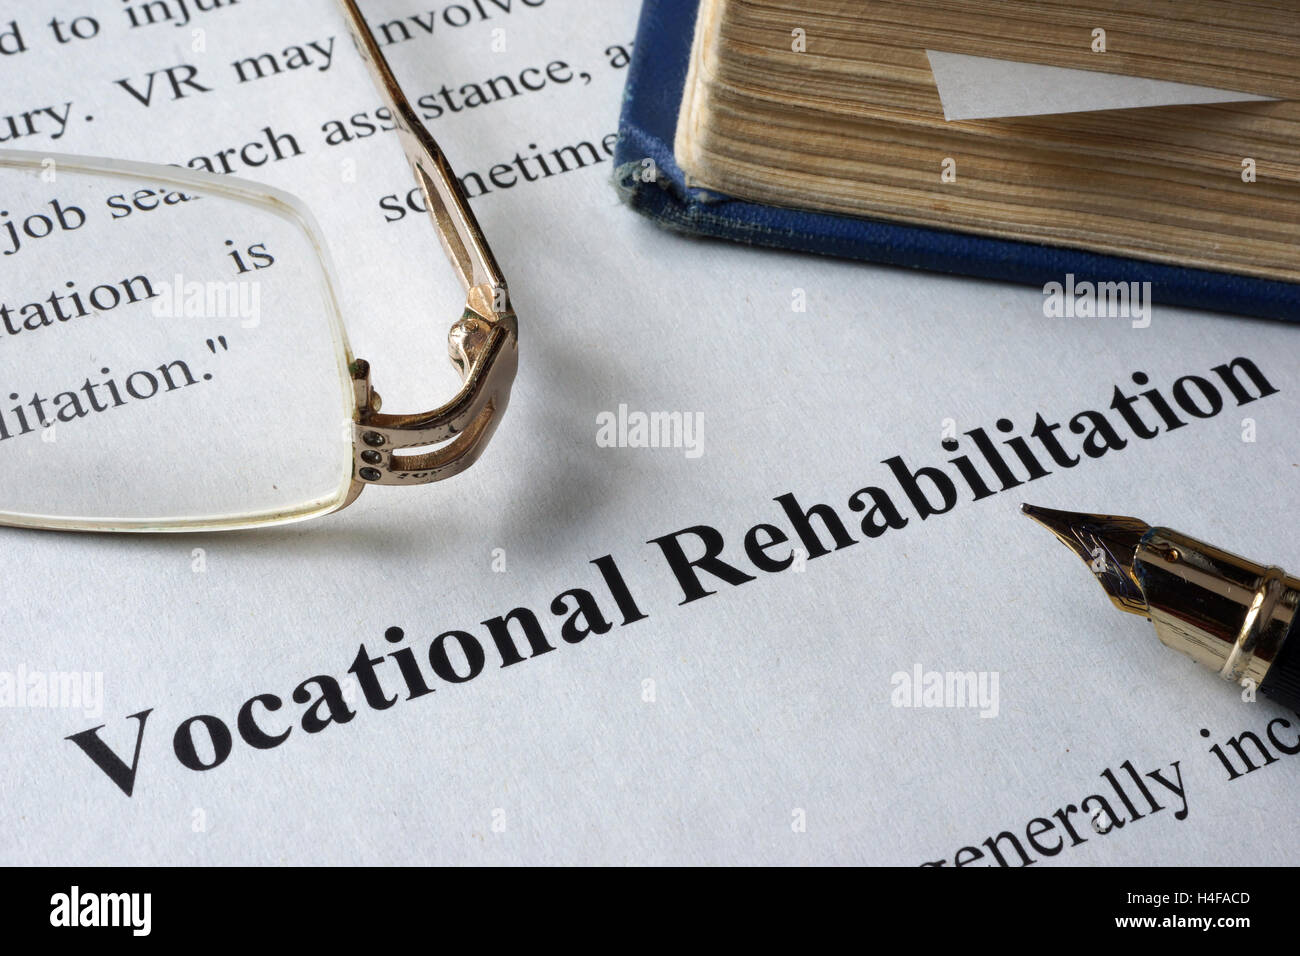 Berufliche Rehabilitation auf ein Blatt Papier und ein Buch geschrieben. Stockfoto